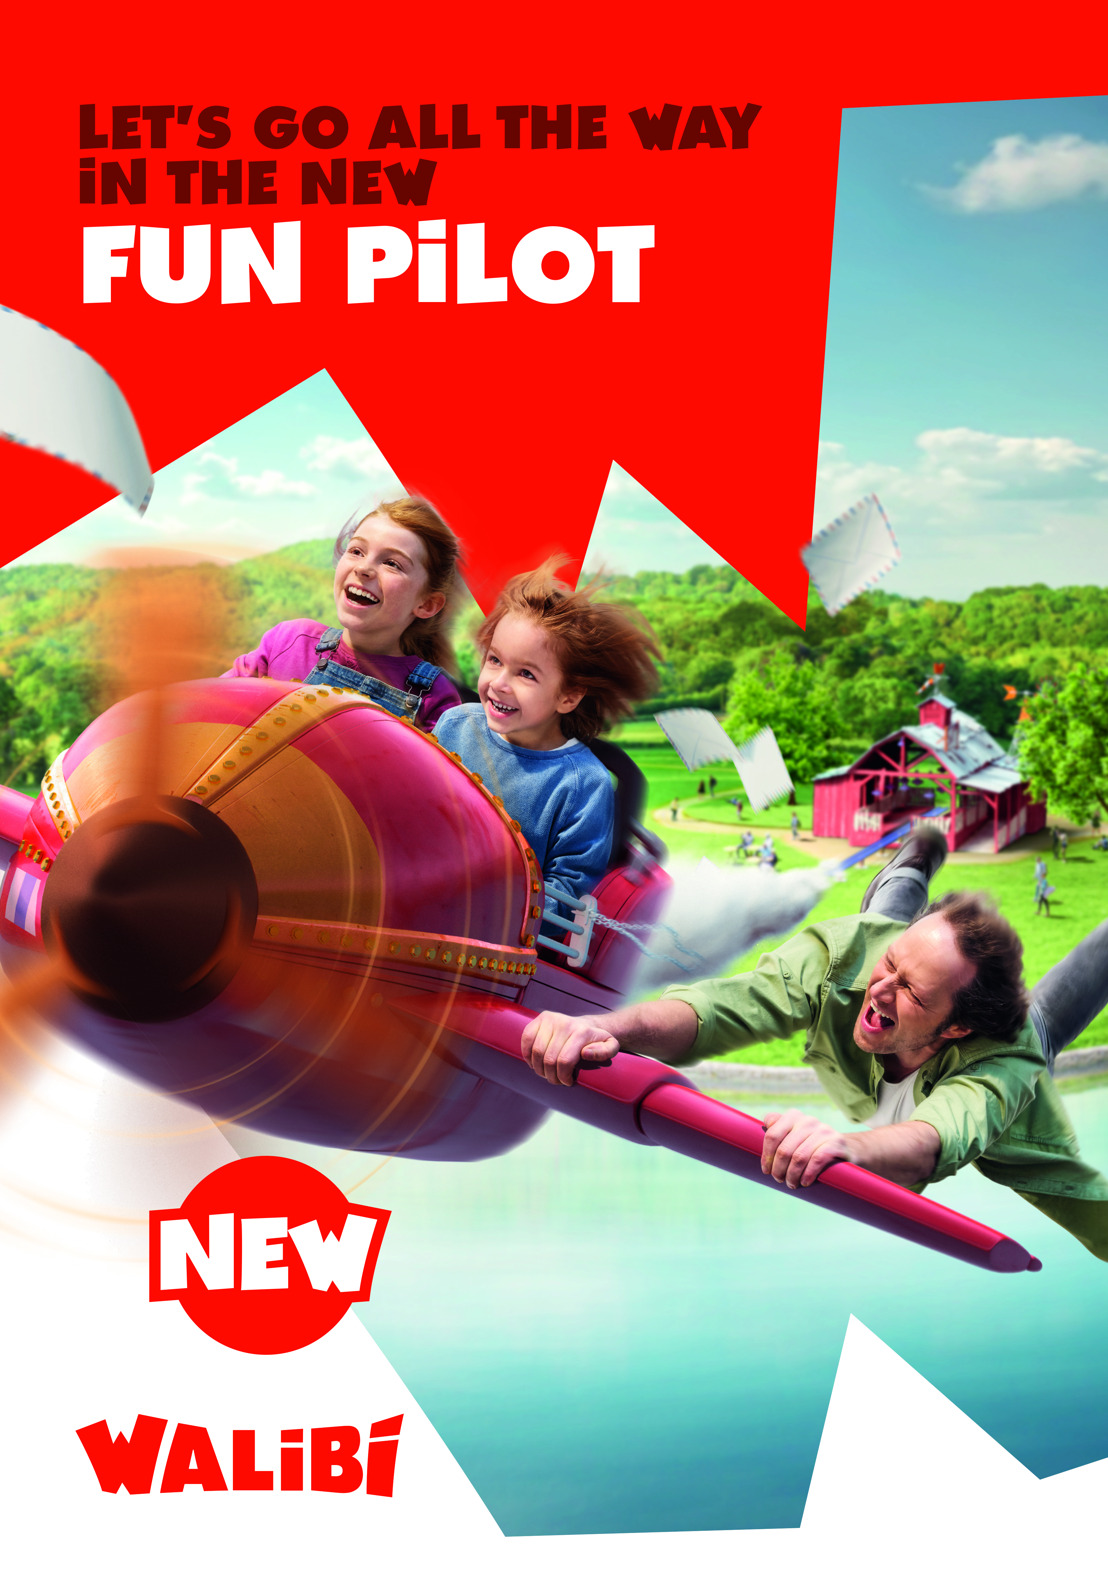 Fun Pilot is de naam van de nieuwste achtbaan in Walibi!